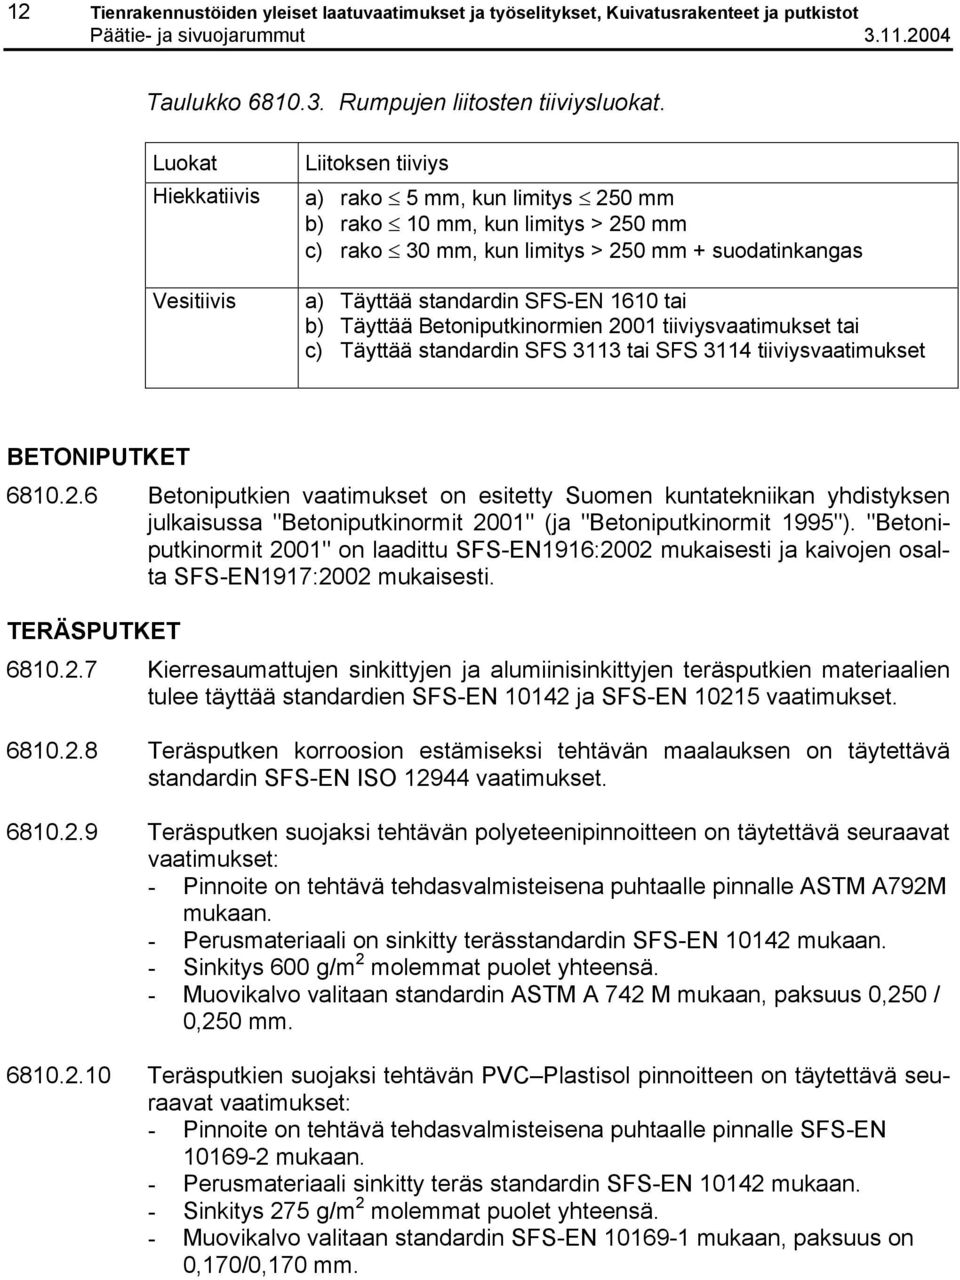 1610 tai b) Täyttää Betoniputkinormien 2001 tiiviysvaatimukset tai c) Täyttää standardin SFS 3113 tai SFS 3114 tiiviysvaatimukset BETONIPUTKET 6810.2.6 Betoniputkien vaatimukset on esitetty Suomen kuntatekniikan yhdistyksen julkaisussa "Betoniputkinormit 2001" (ja "Betoniputkinormit 1995").